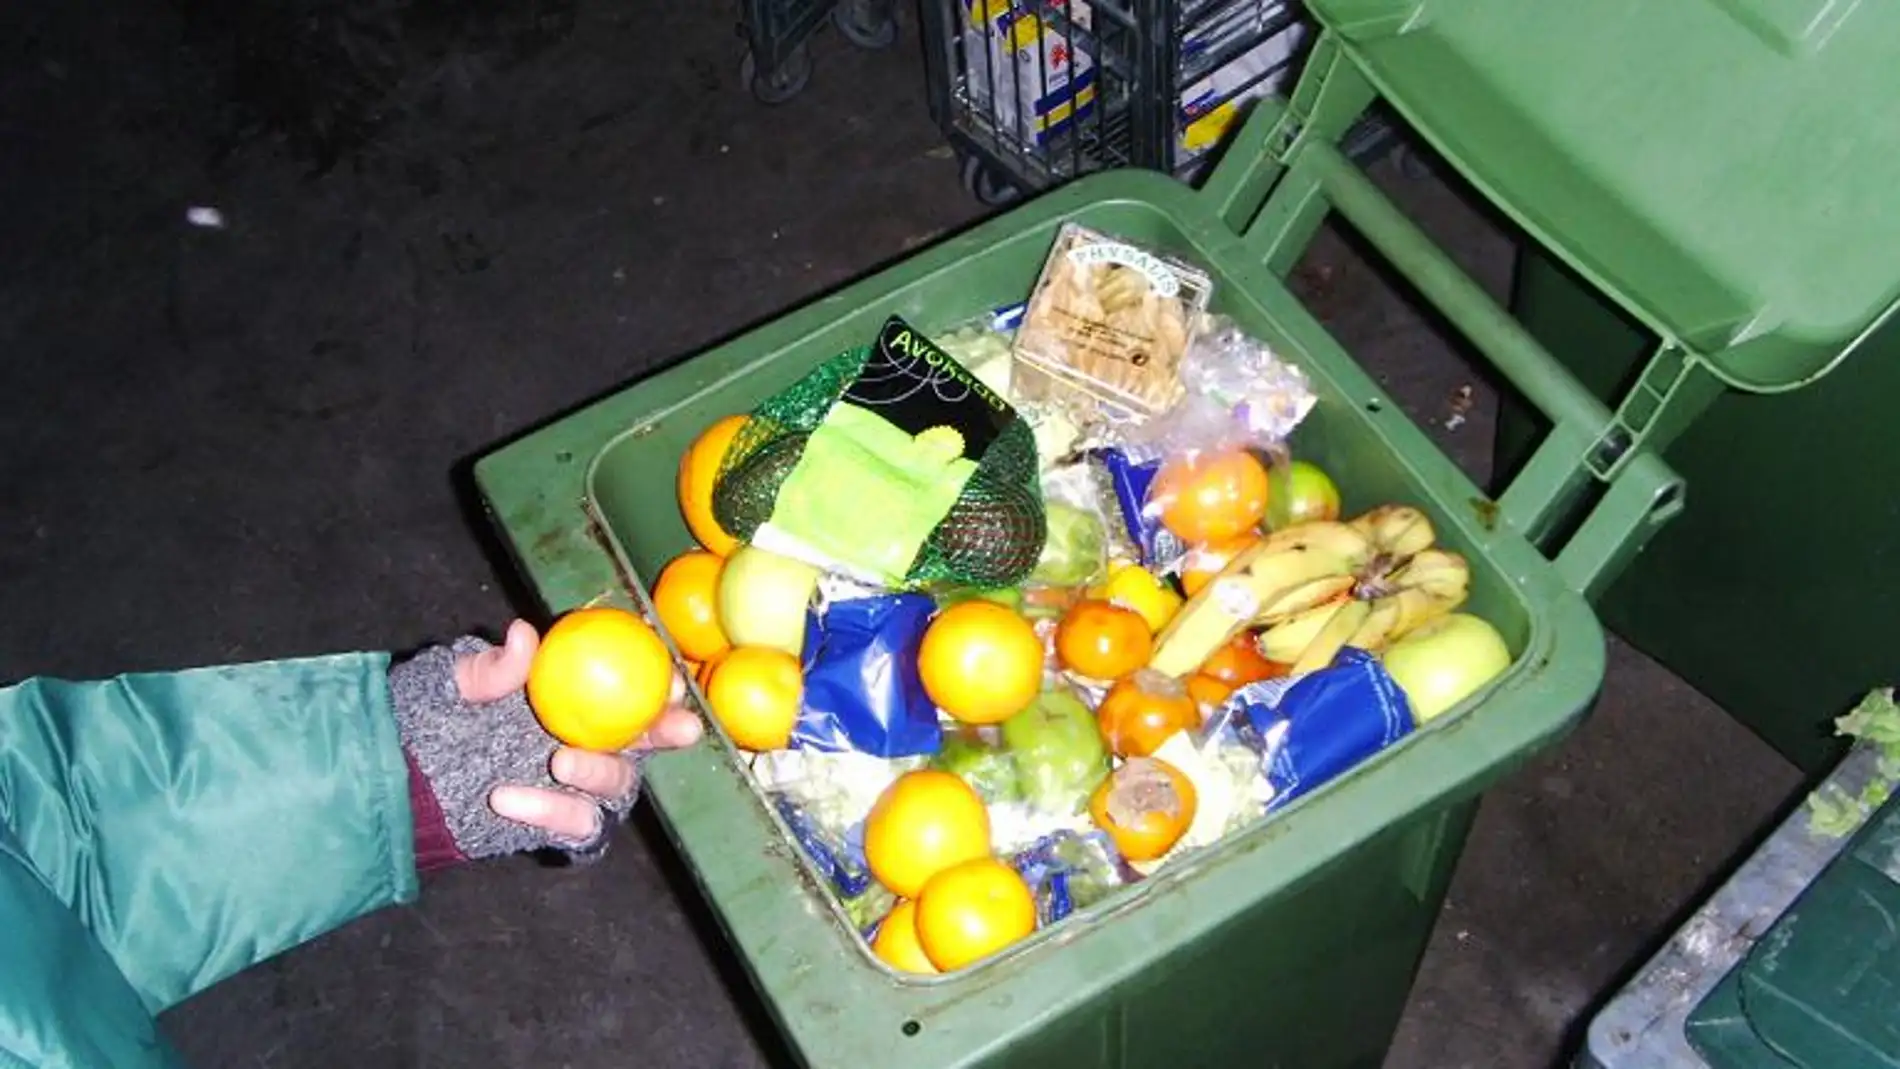 Los friganos rescatan de la basura comida en buen estado.